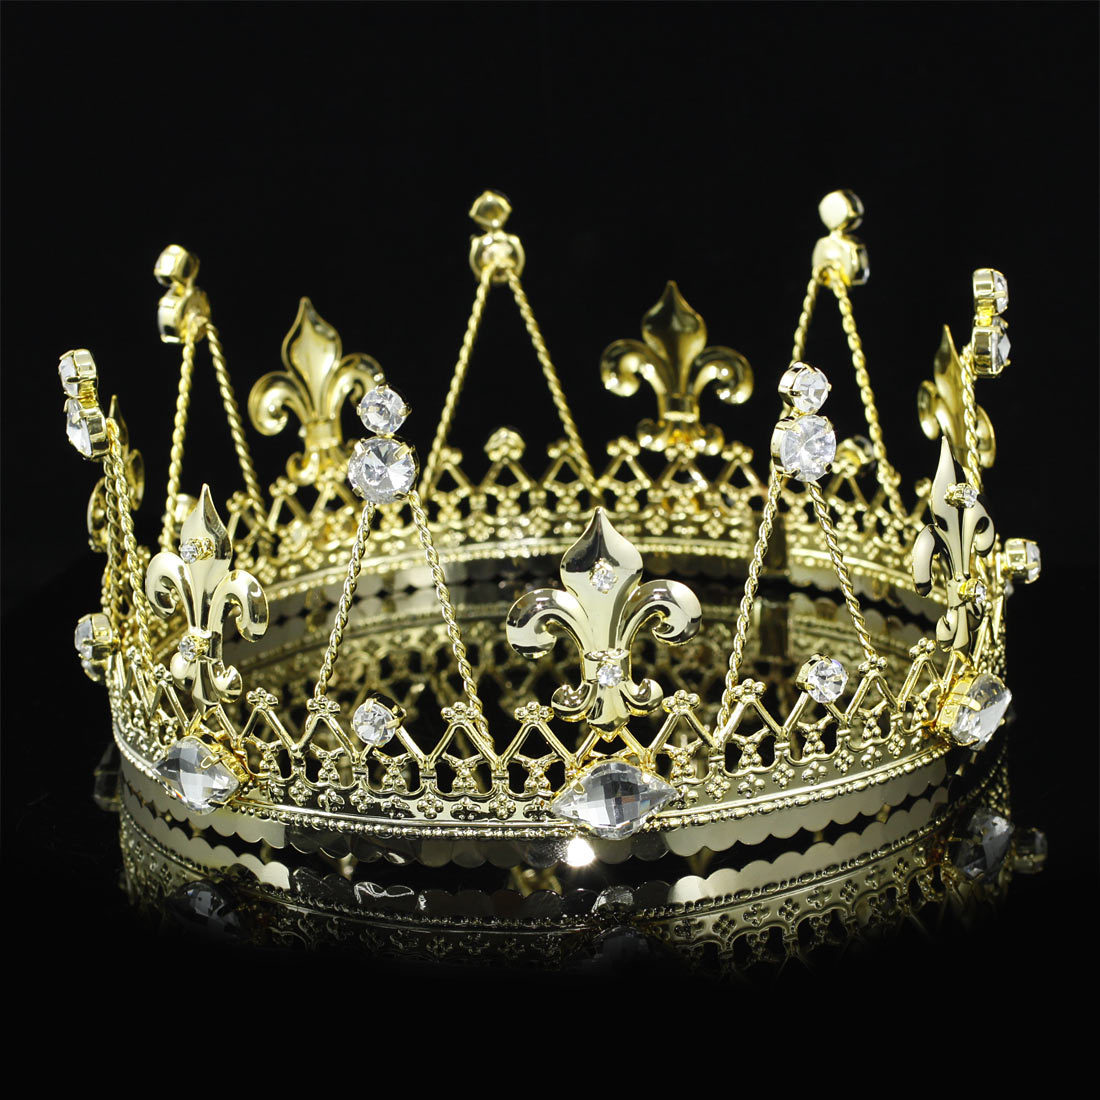 Сайт уральской короны. Корона 100сс. Корона короля Дании Кристиана IV. Золотая корона царя. WB корона Царская d 17.5см.